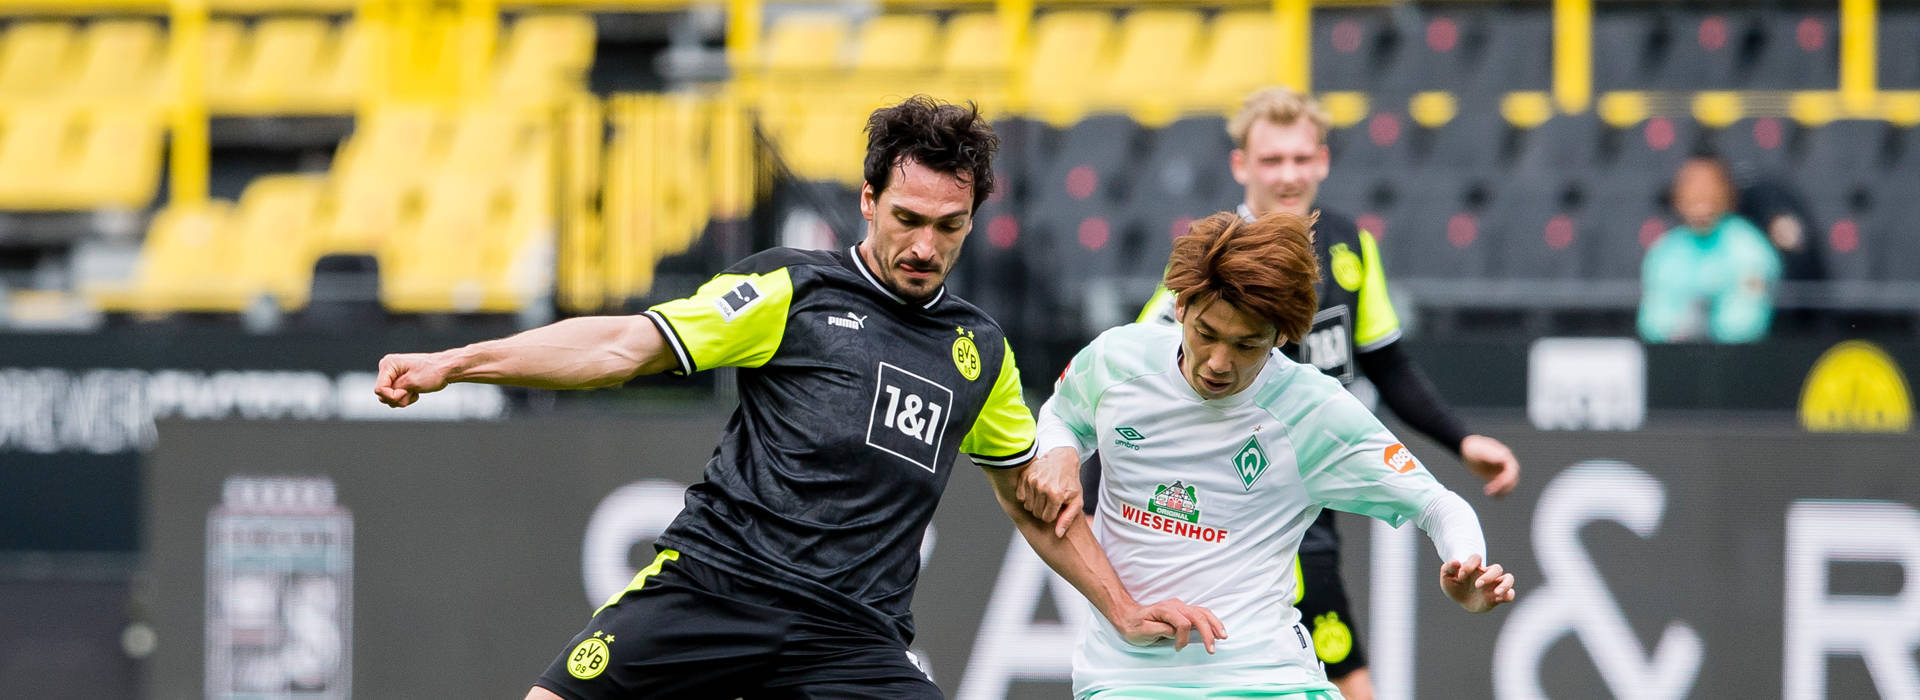 Spektakulär ist Standard zwischen Borussia und Werder